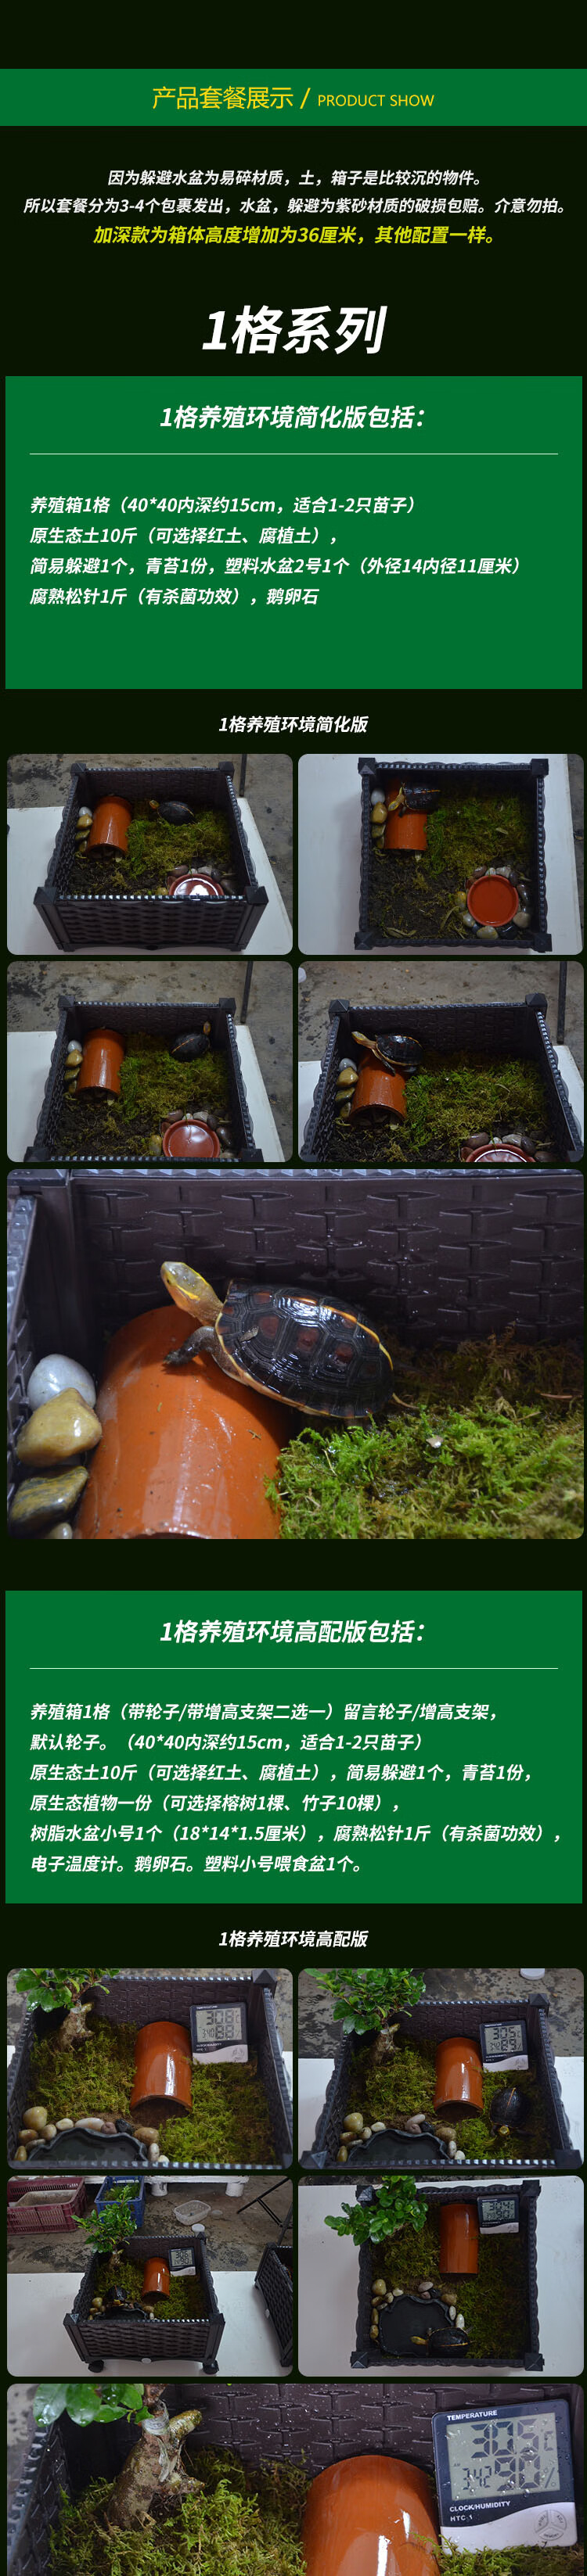 黄缘龟仿野生环境图箱图片